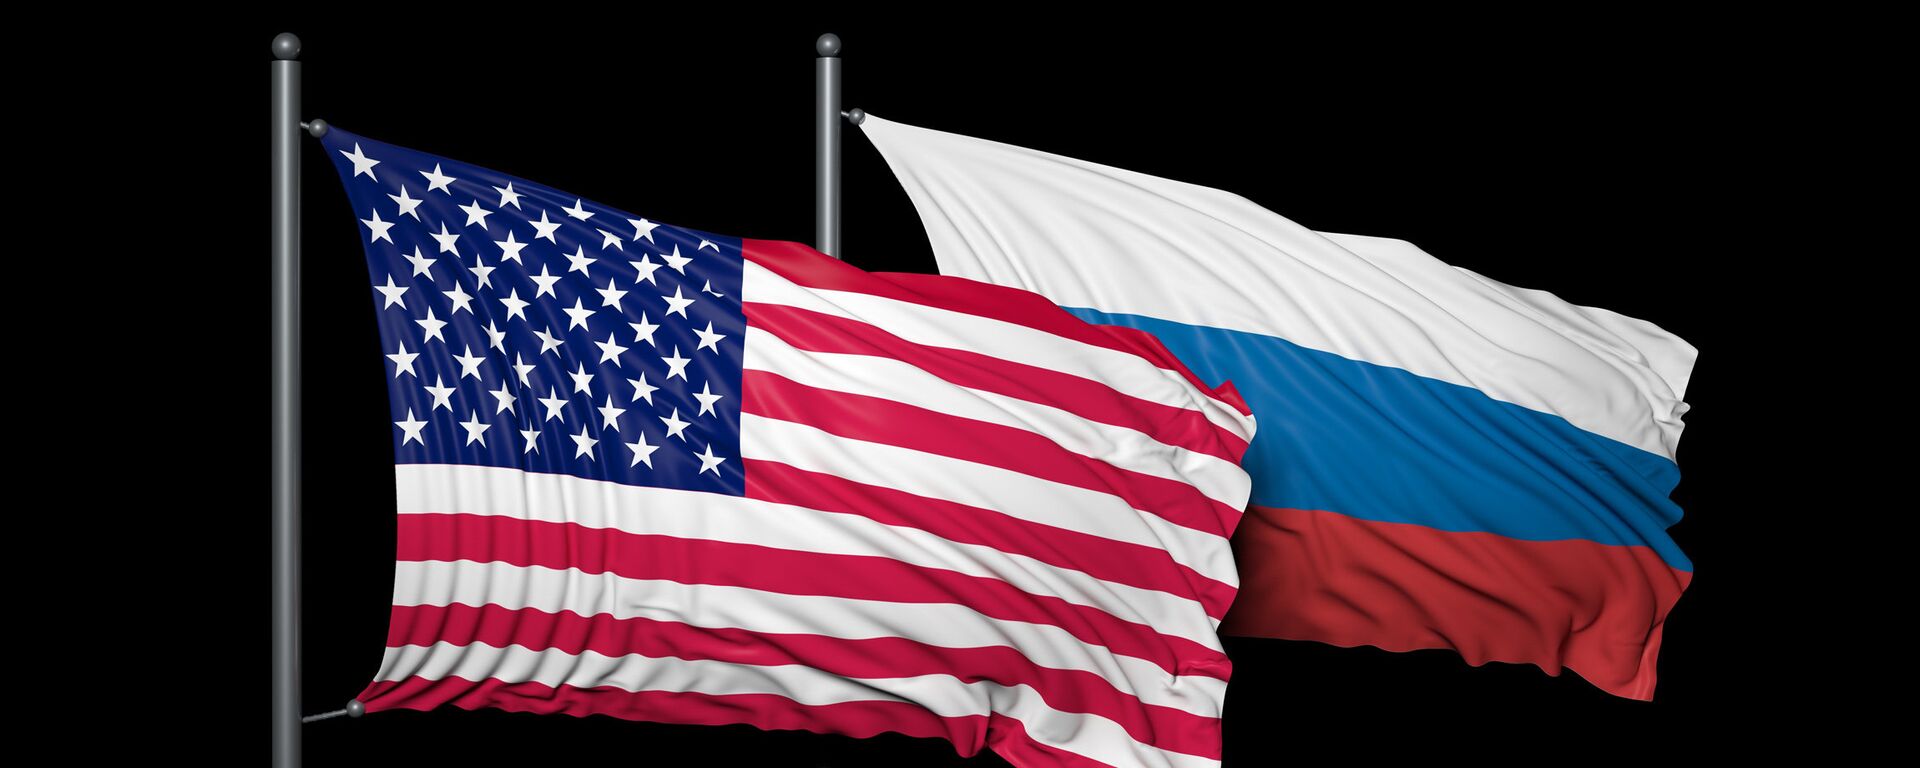 Banderas de EEUU y de Rusia  - Sputnik Mundo, 1920, 13.04.2021